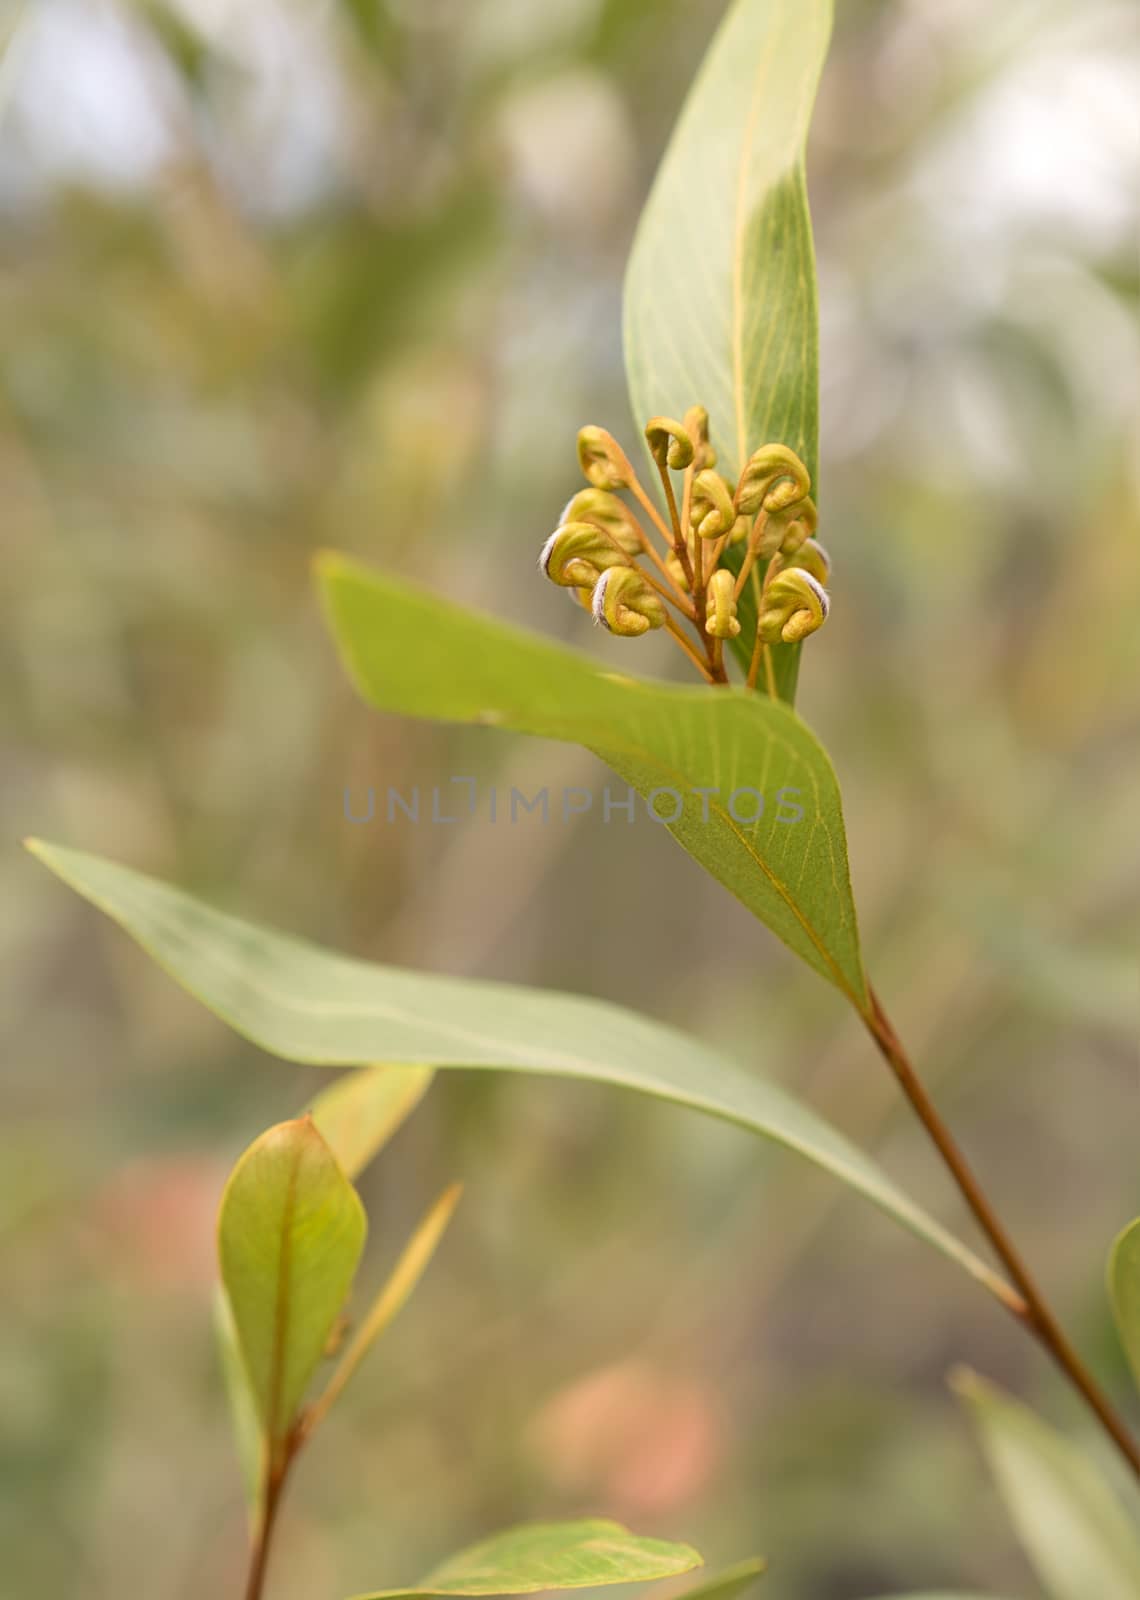 Australian native Grevillea flower buds by sherj